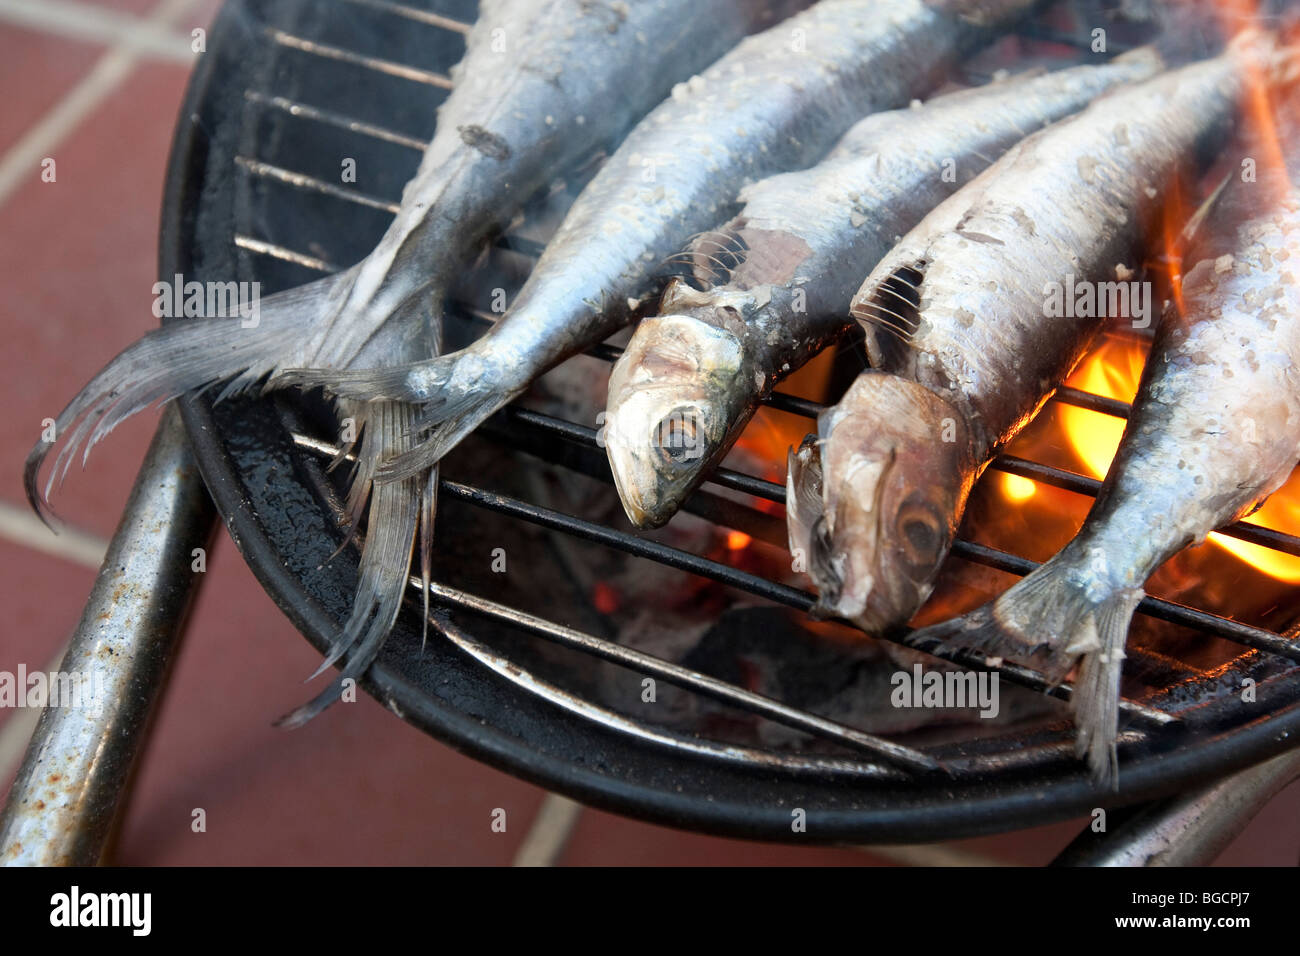 Grillades de poissons (sardines et d'un maquereau) cuisson sur un mini barbecue Banque D'Images